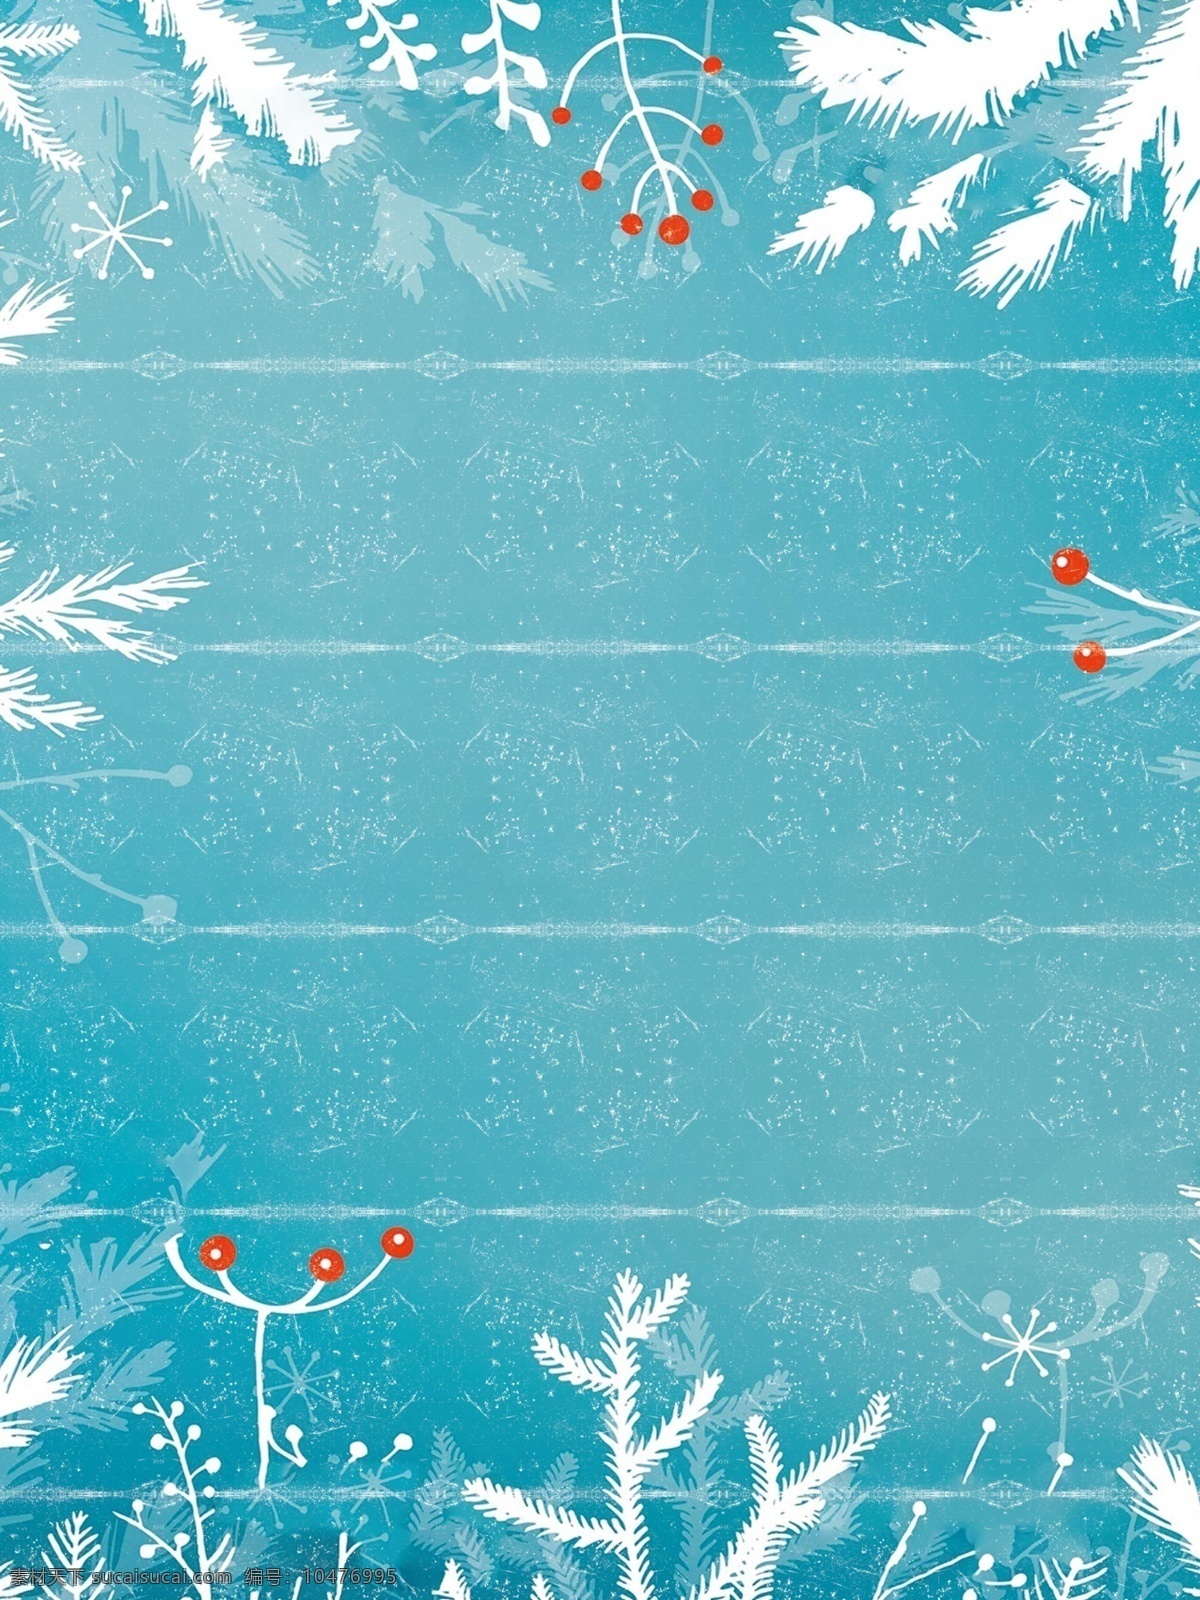 冬天 树枝 装饰 背景 蓝色 雪花 唯美 冬季海报 大雪 小雪节气 下雪 大雪背景素材 冬季大雪 背景设计 雪地 彩绘背景